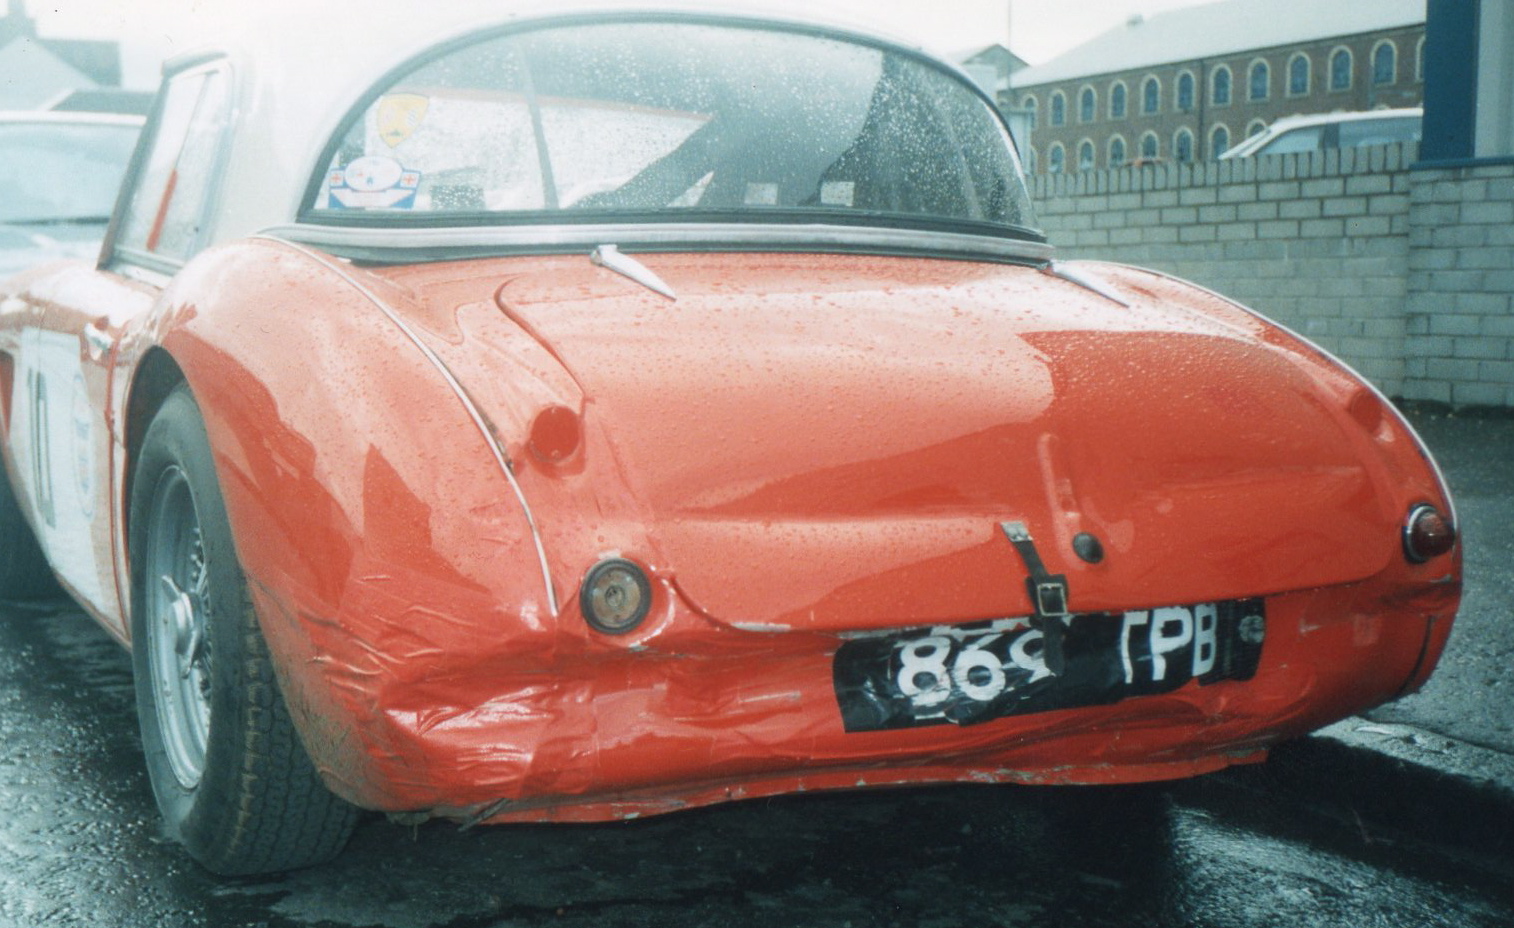 869 TPB aa rear damaged